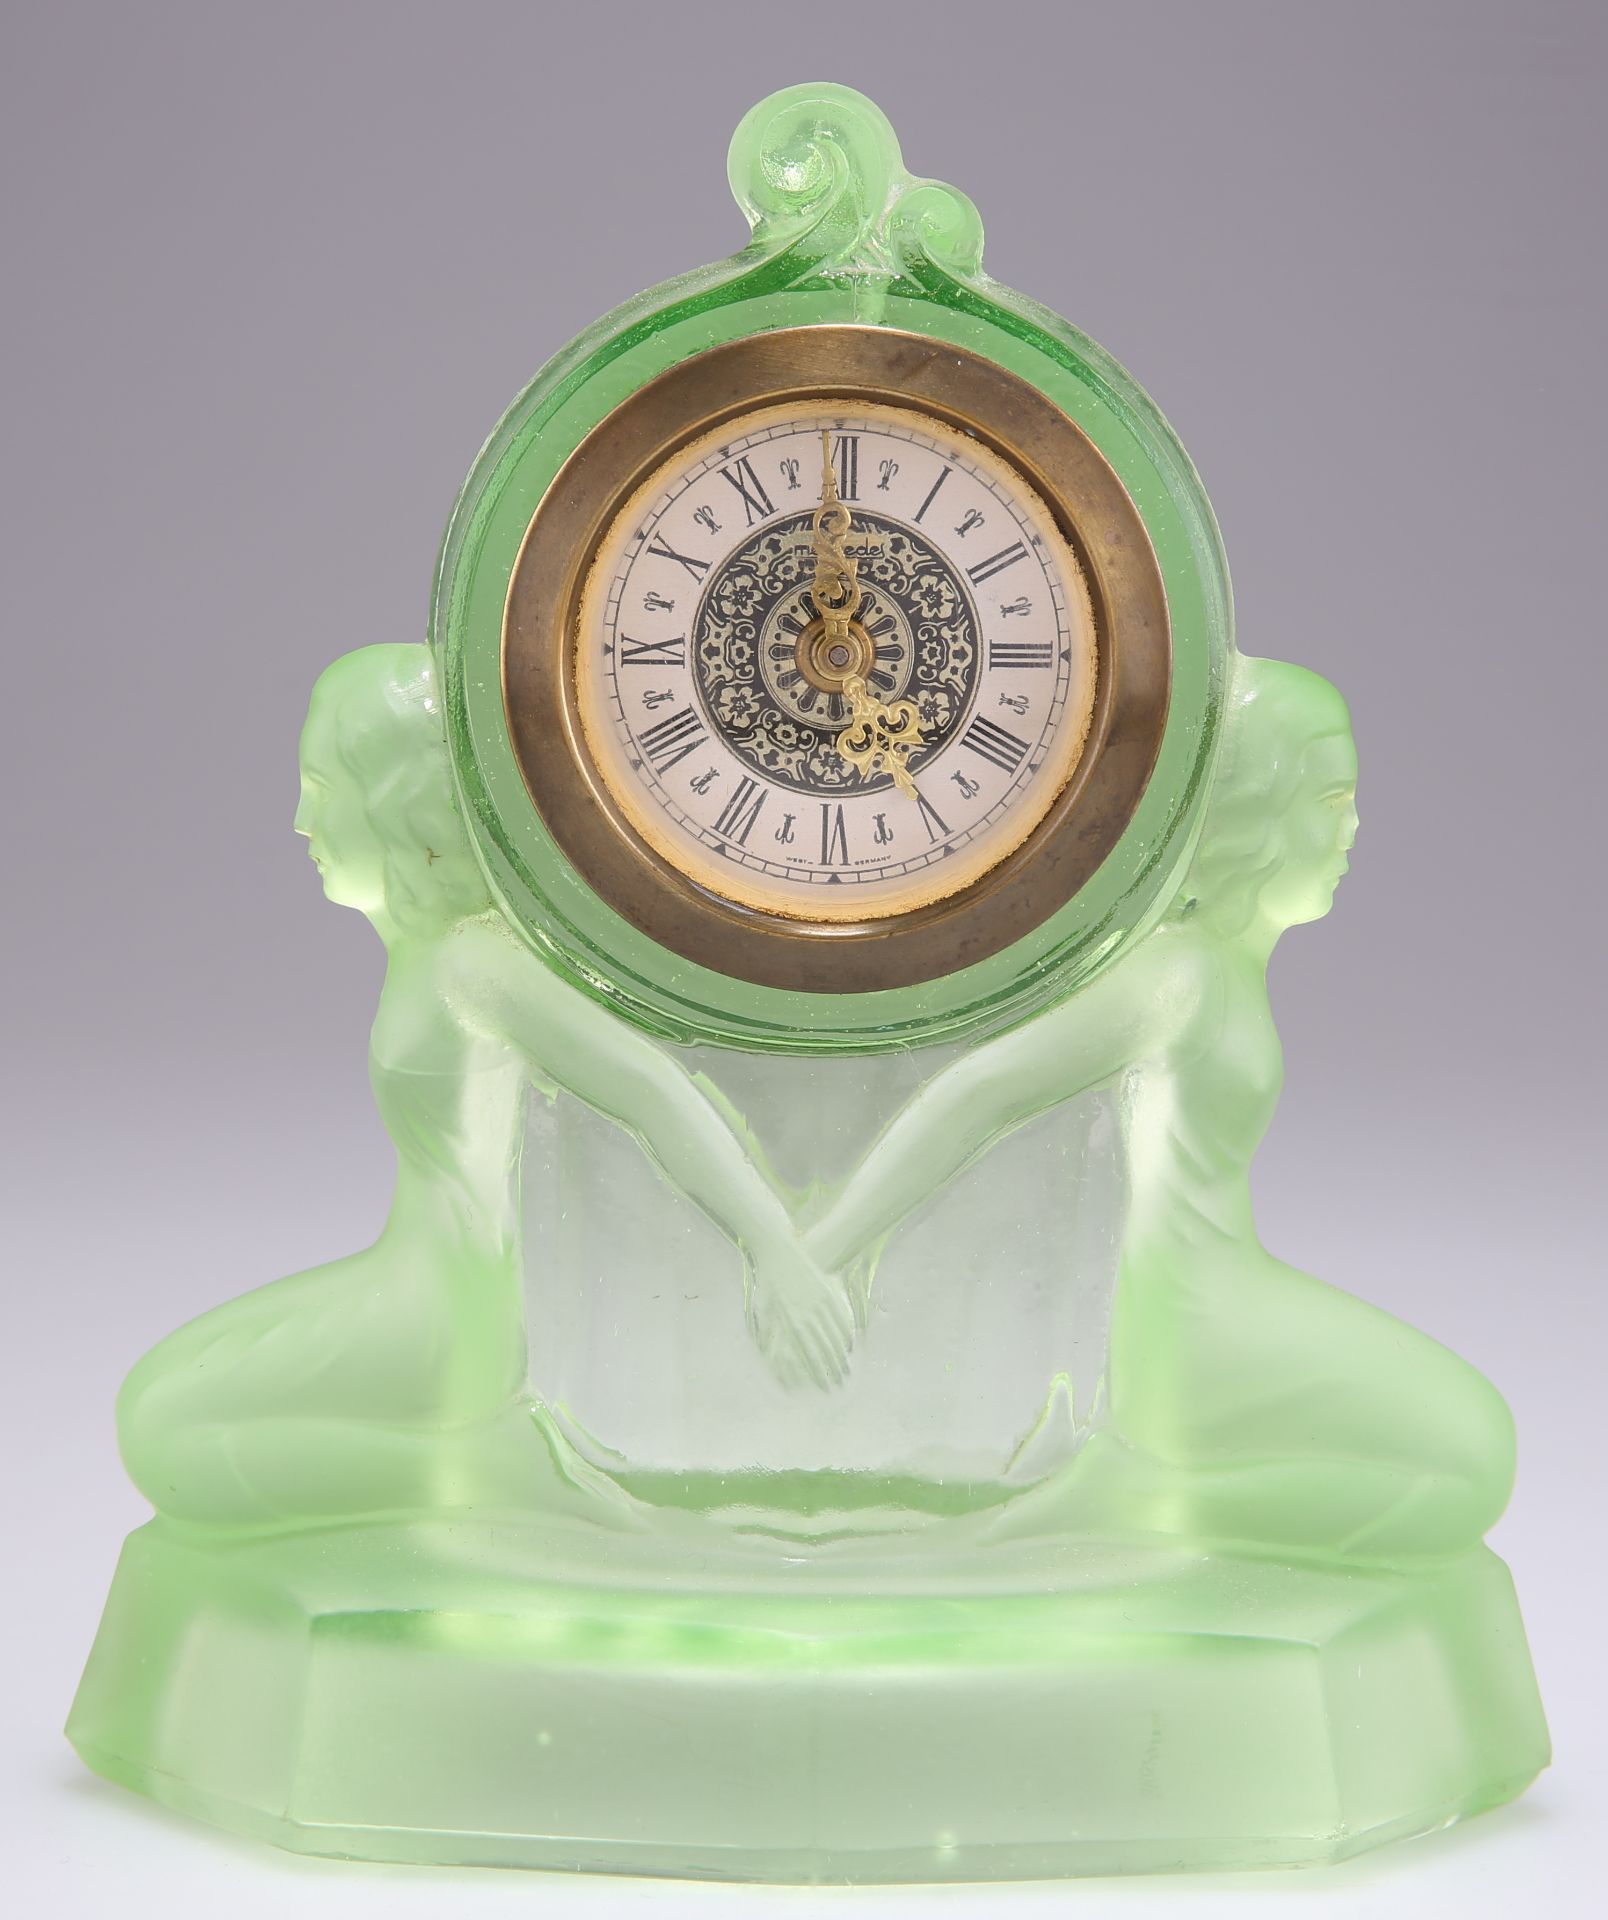 AN ART DECO URANIUM GLASS MANTEL CLOCK